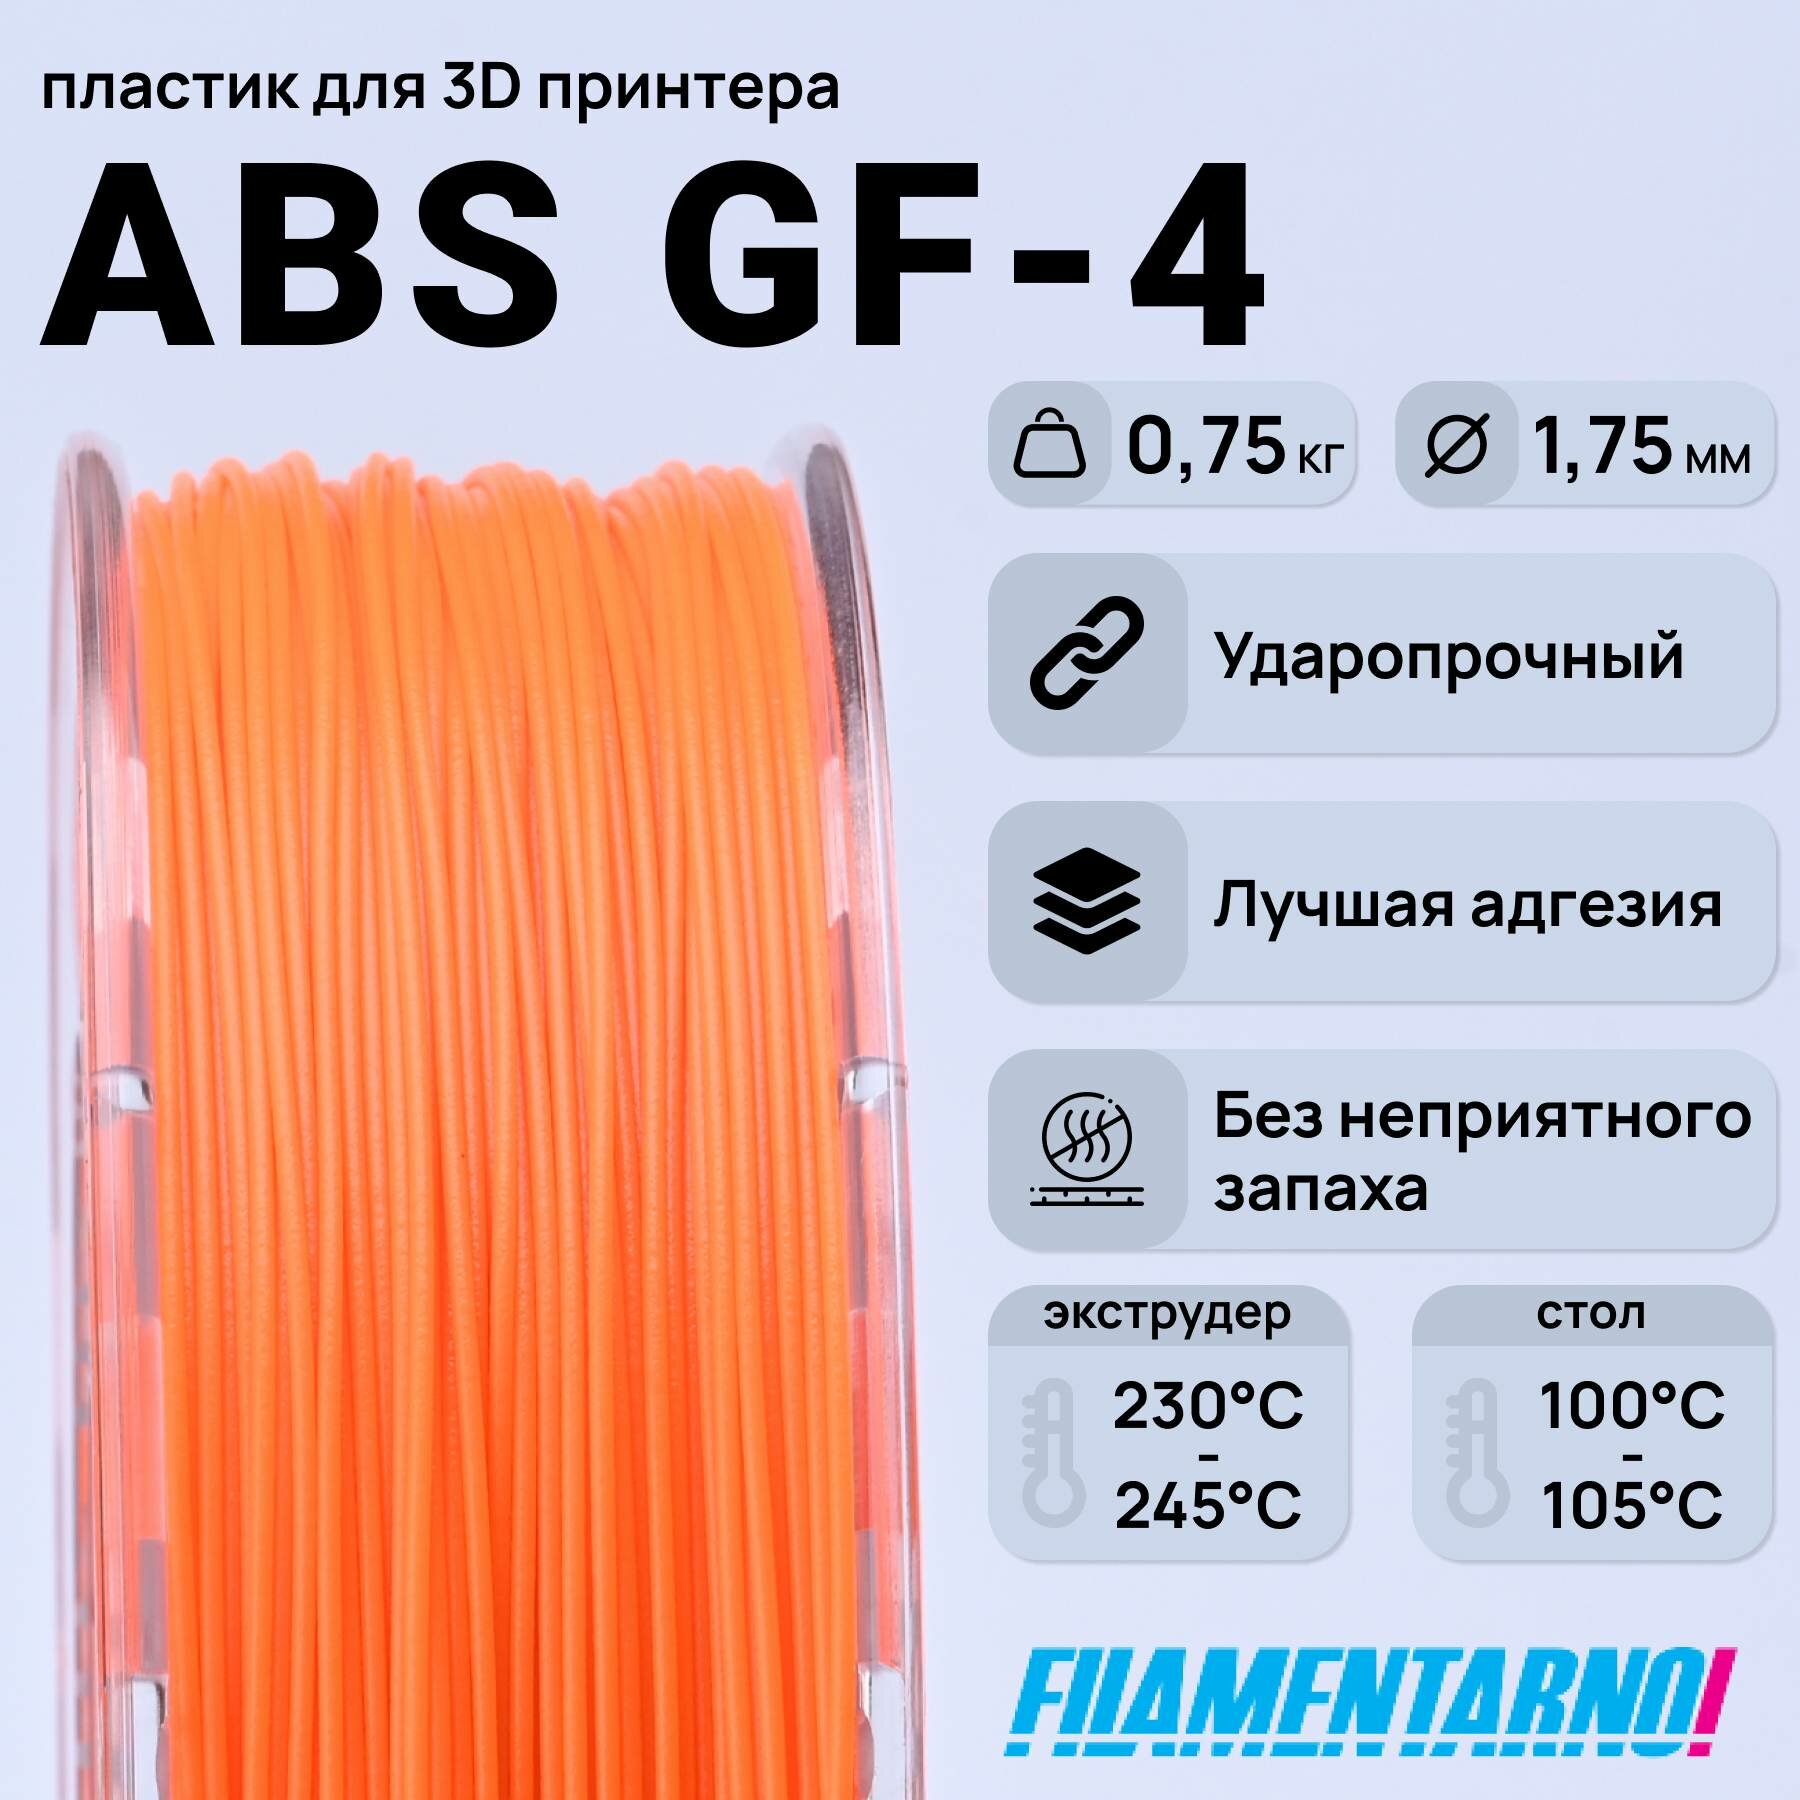 ABS GF-4 оранжевый 750 г, 1,75 мм, пластик Filamentarno для 3D-принтера